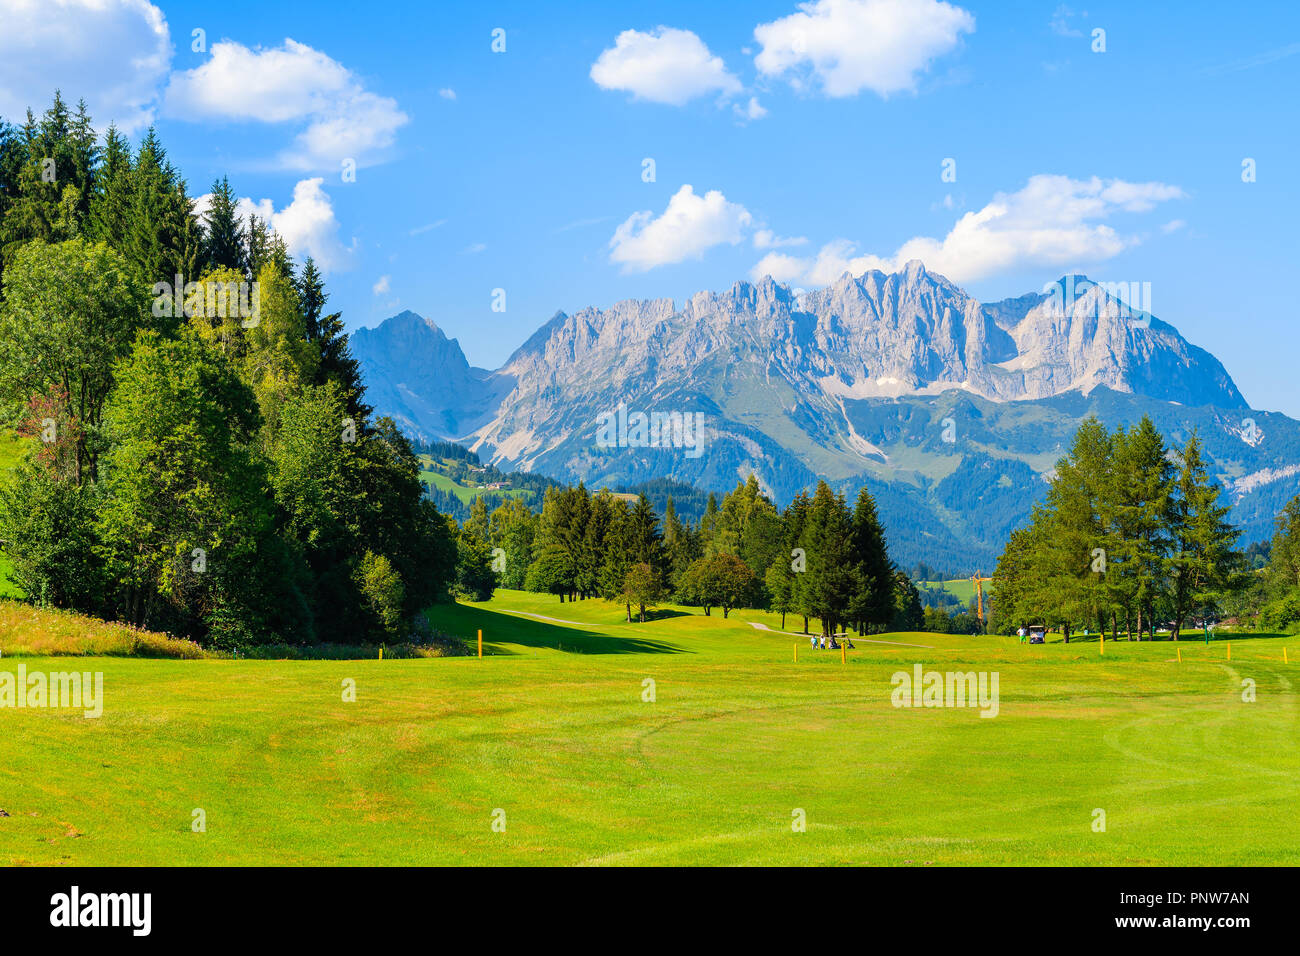 Verdi campi da golf zona contro lo sfondo delle montagne su soleggiate giornate estive, Kitzbuhel, Tirolo, Austria Foto Stock